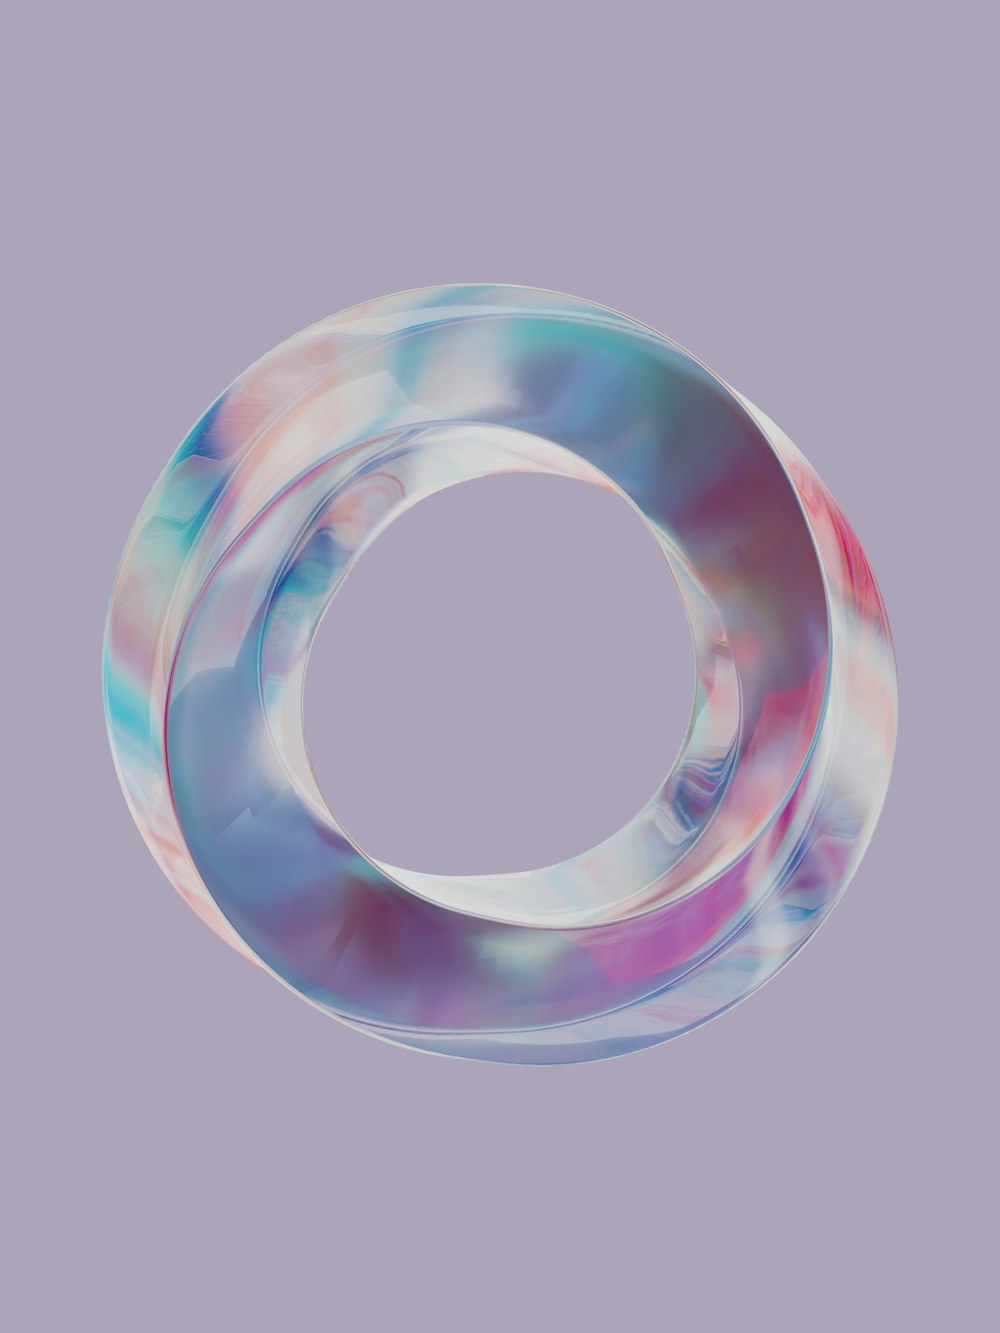 um objeto circular com um design azul e rosa sobre ele